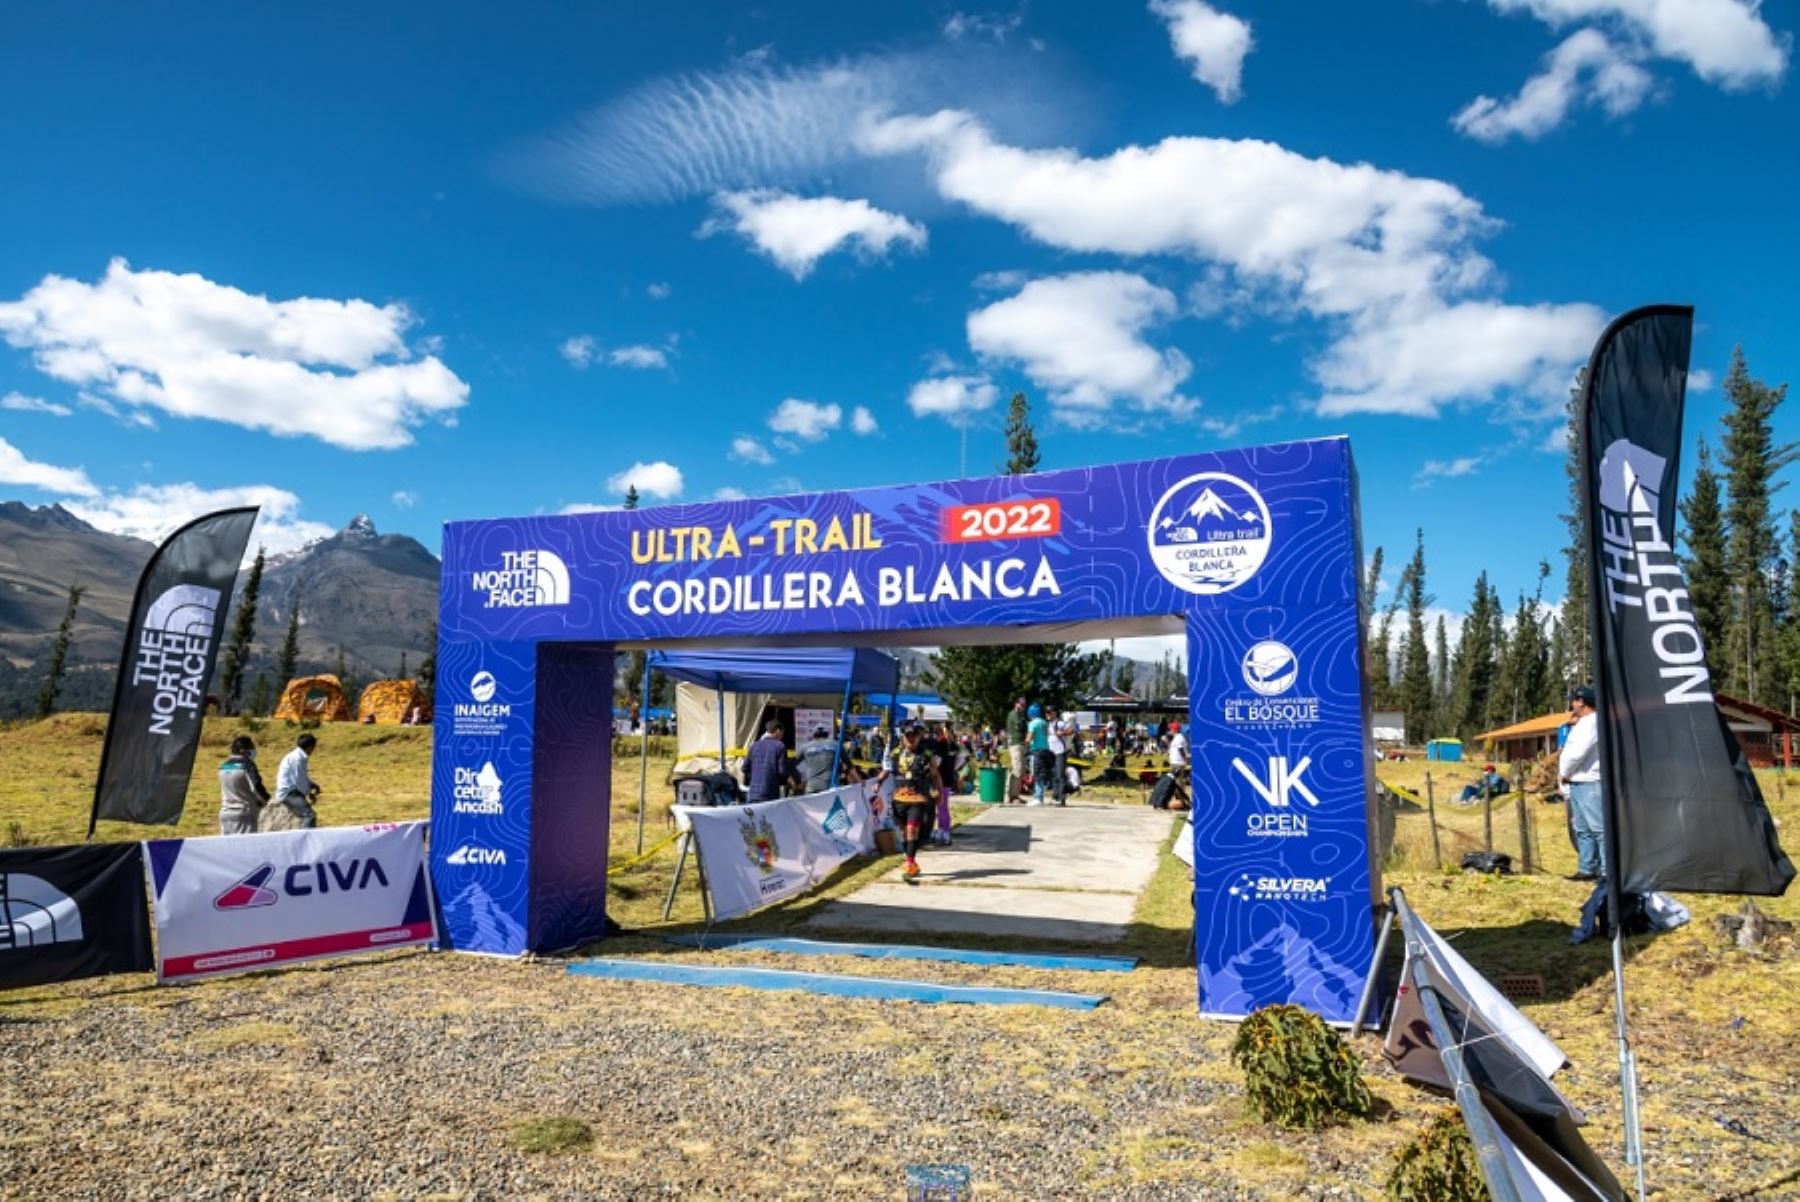 Huaraz se alista para recibir a 800 corredores de trail running de élite de todo el mundo que competirán en la octava edición del Ultra Trail Cordillera Blanca 2023 (UTCB), a realizarse del 29 de junio al 2 de julio en las majestuosas montañas de la Cordillera Blanca.